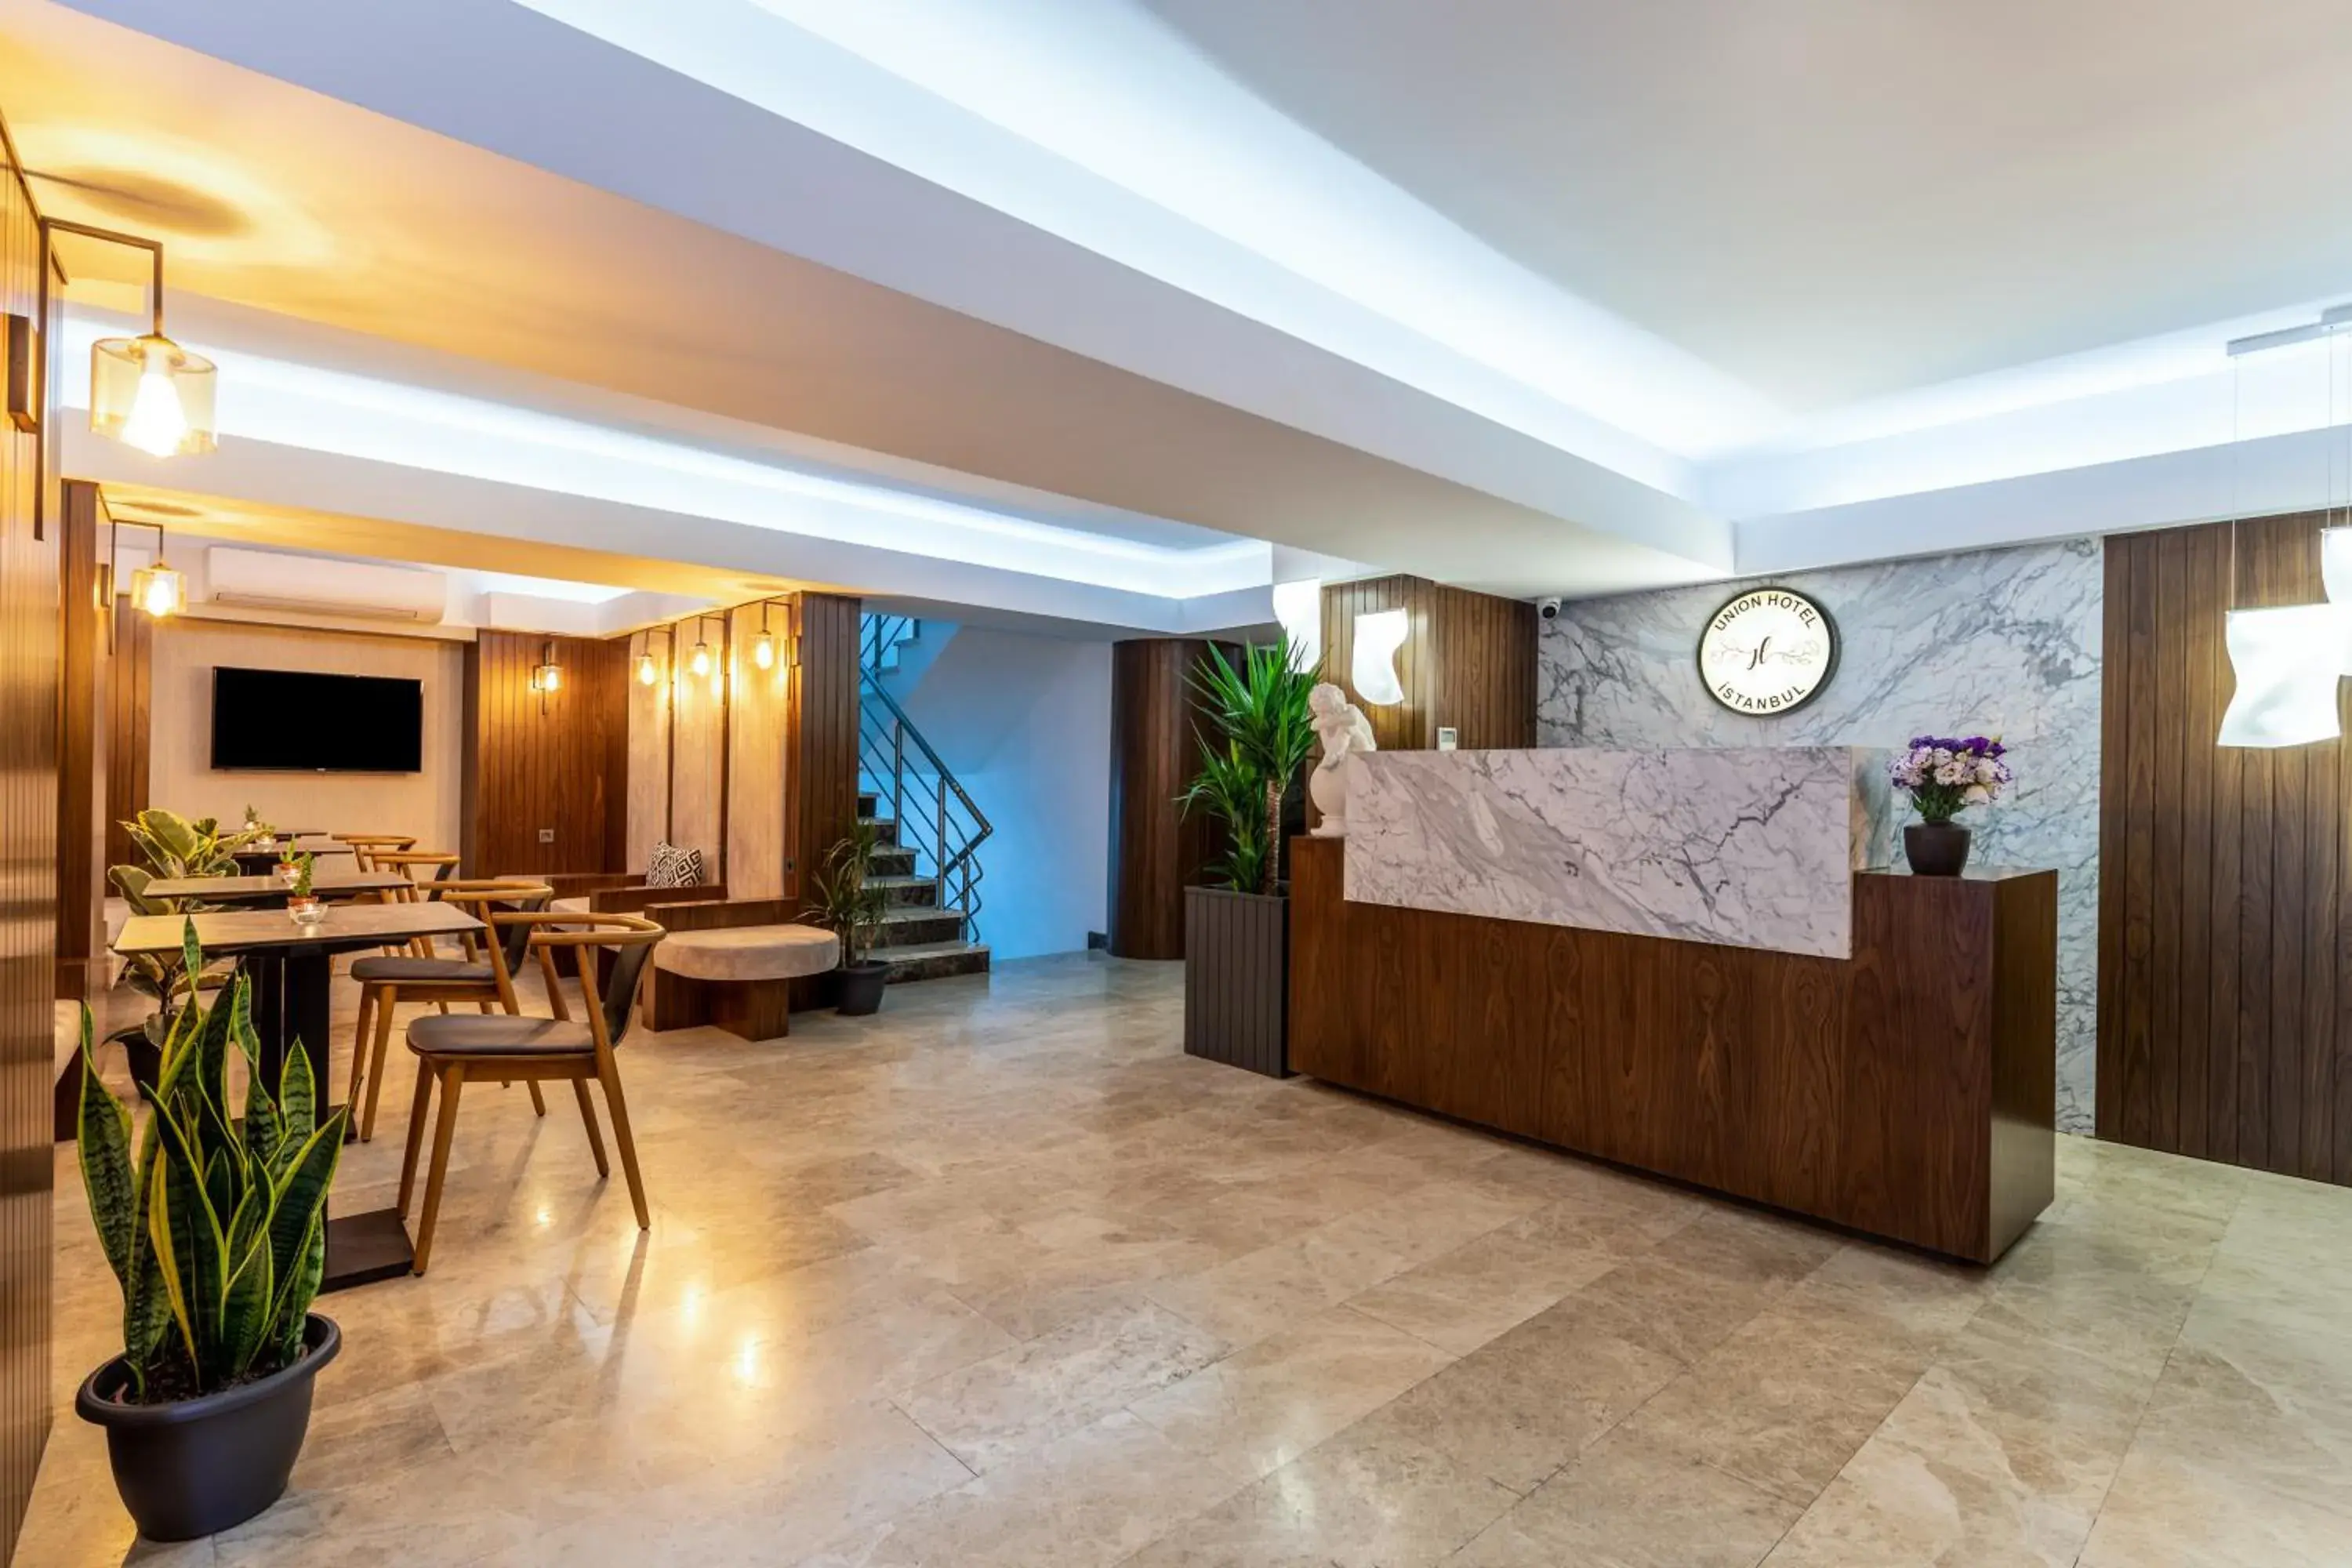 Lobby or reception, Lobby/Reception in Union Hotel Port